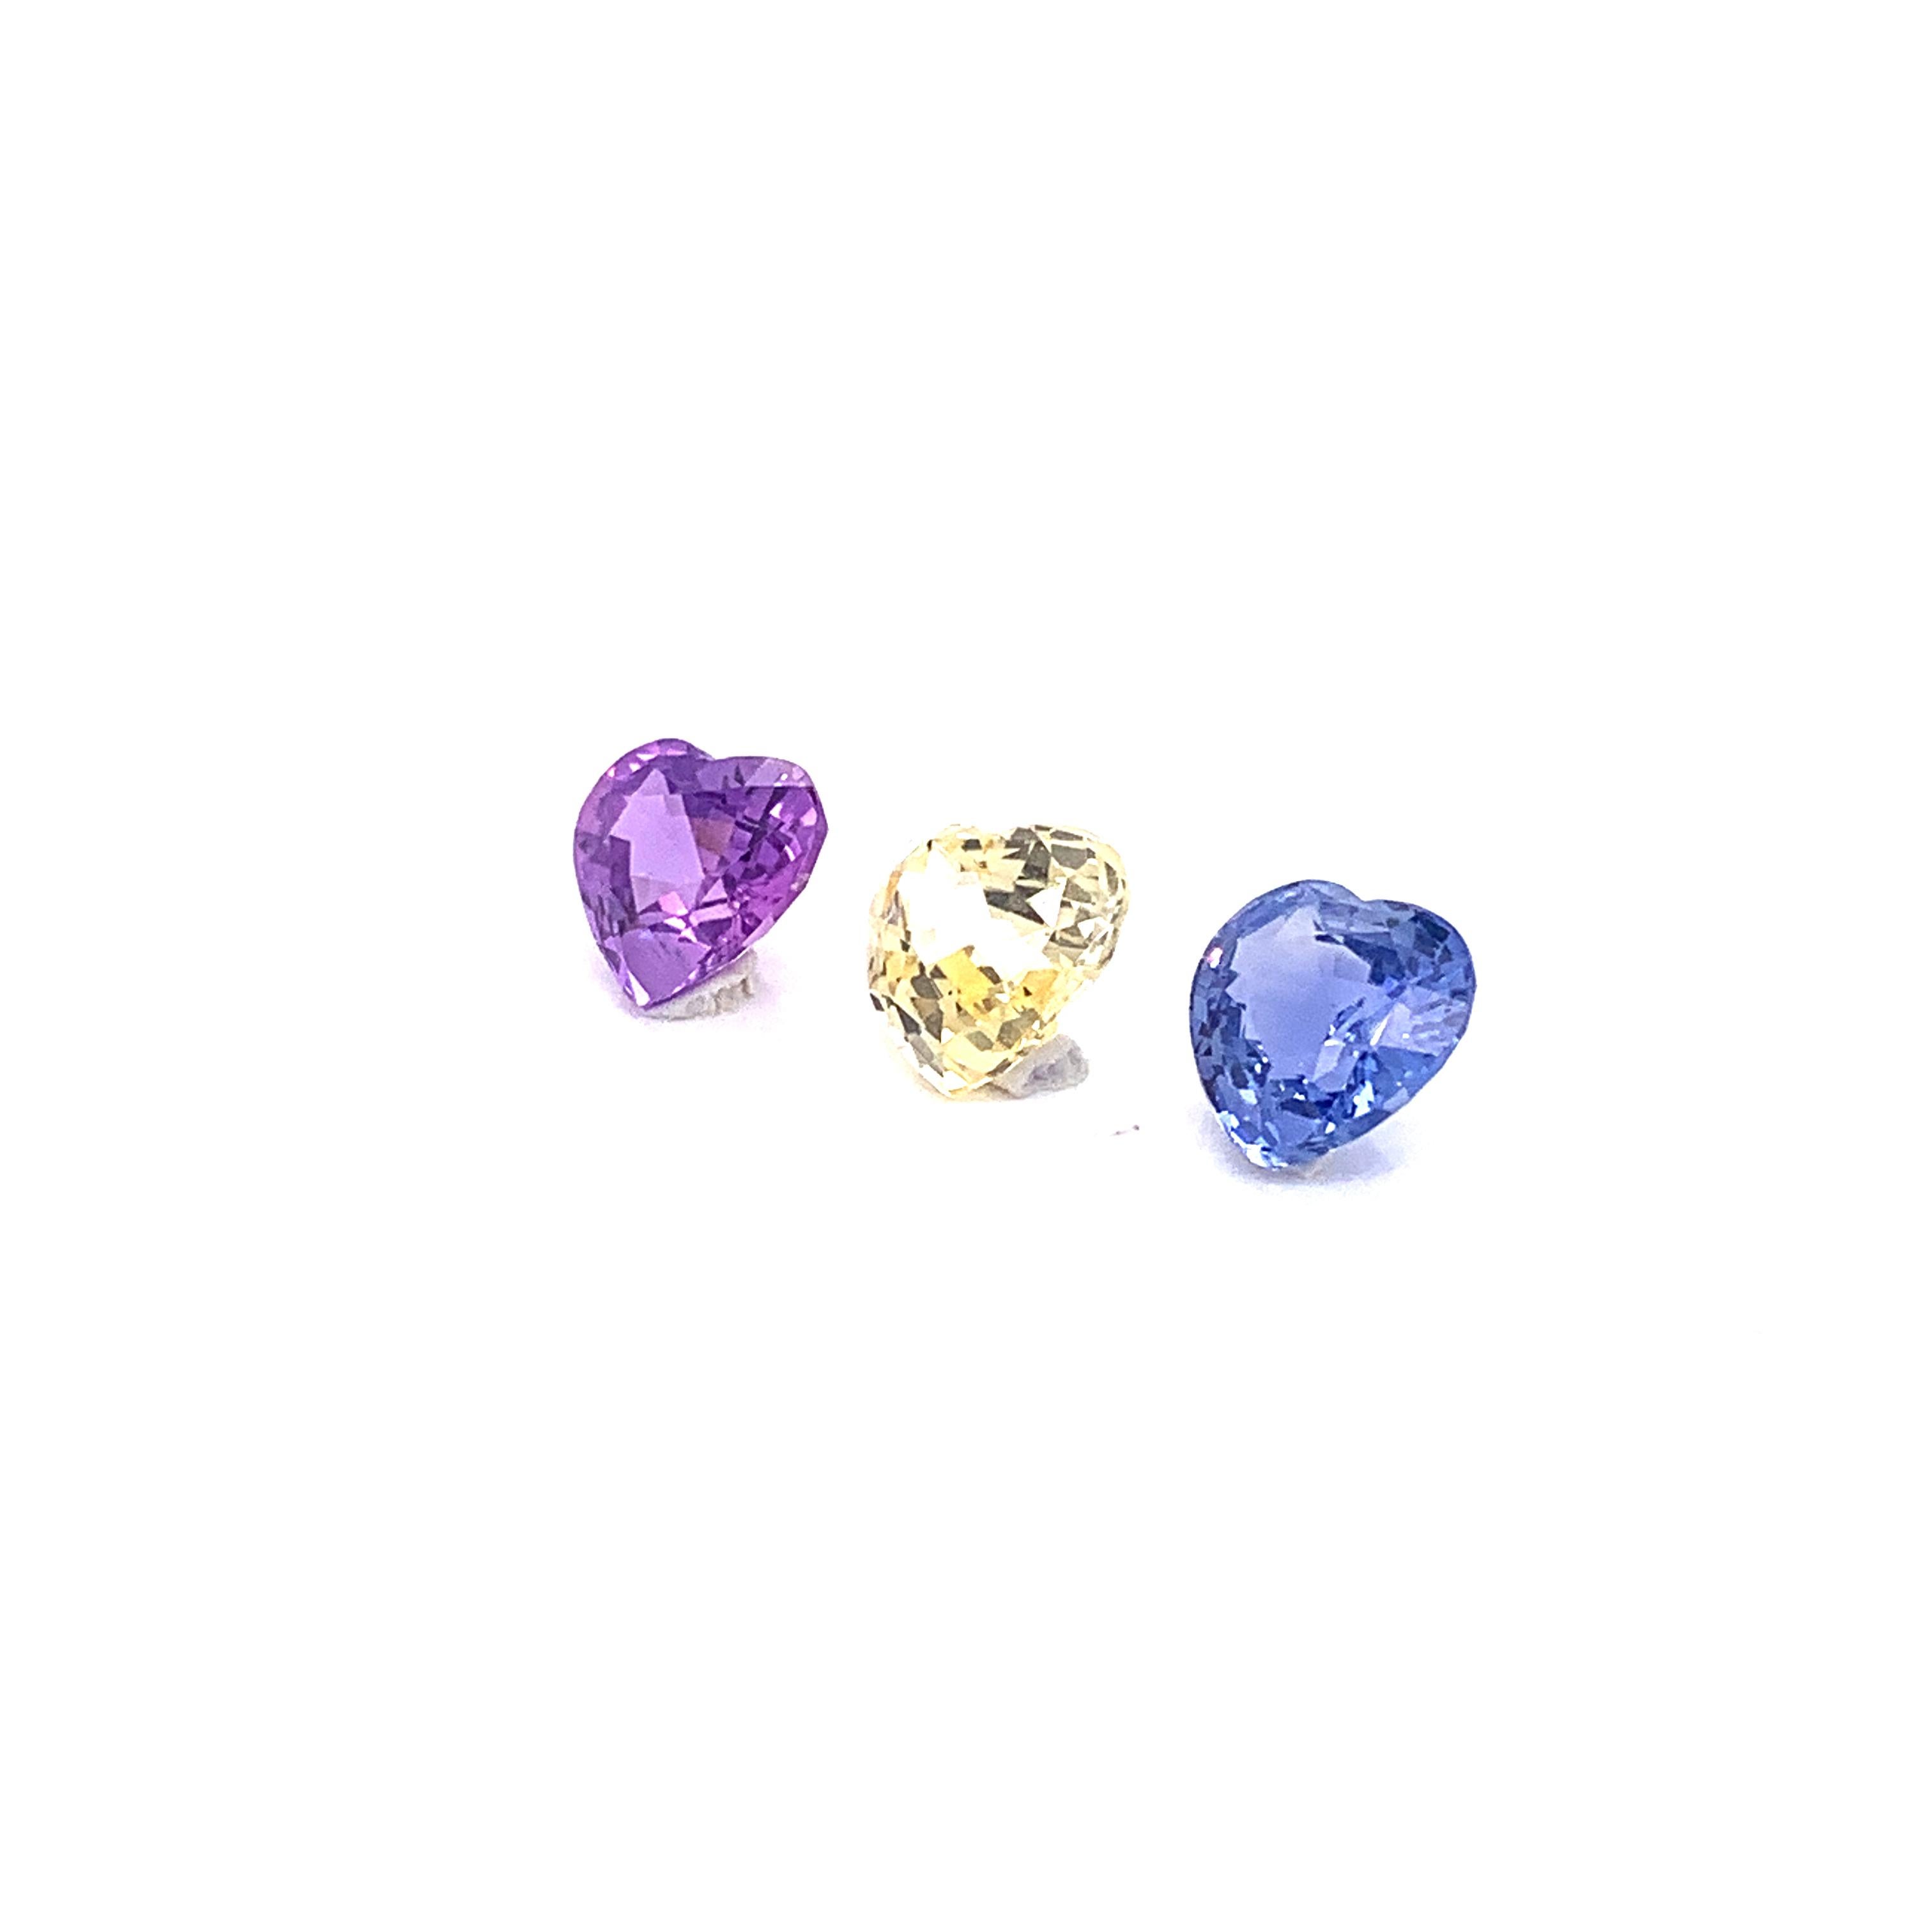 Trio de saphirs bleus, roses et jaunes non chauffés en forme de cœur de 7,22 carats :

Ce trio scintillant est composé de trois saphirs naturels non chauffés, jaune, rose et bleu, d'un poids total de 7,22 carats. Les saphirs ne sont pas chauffés et